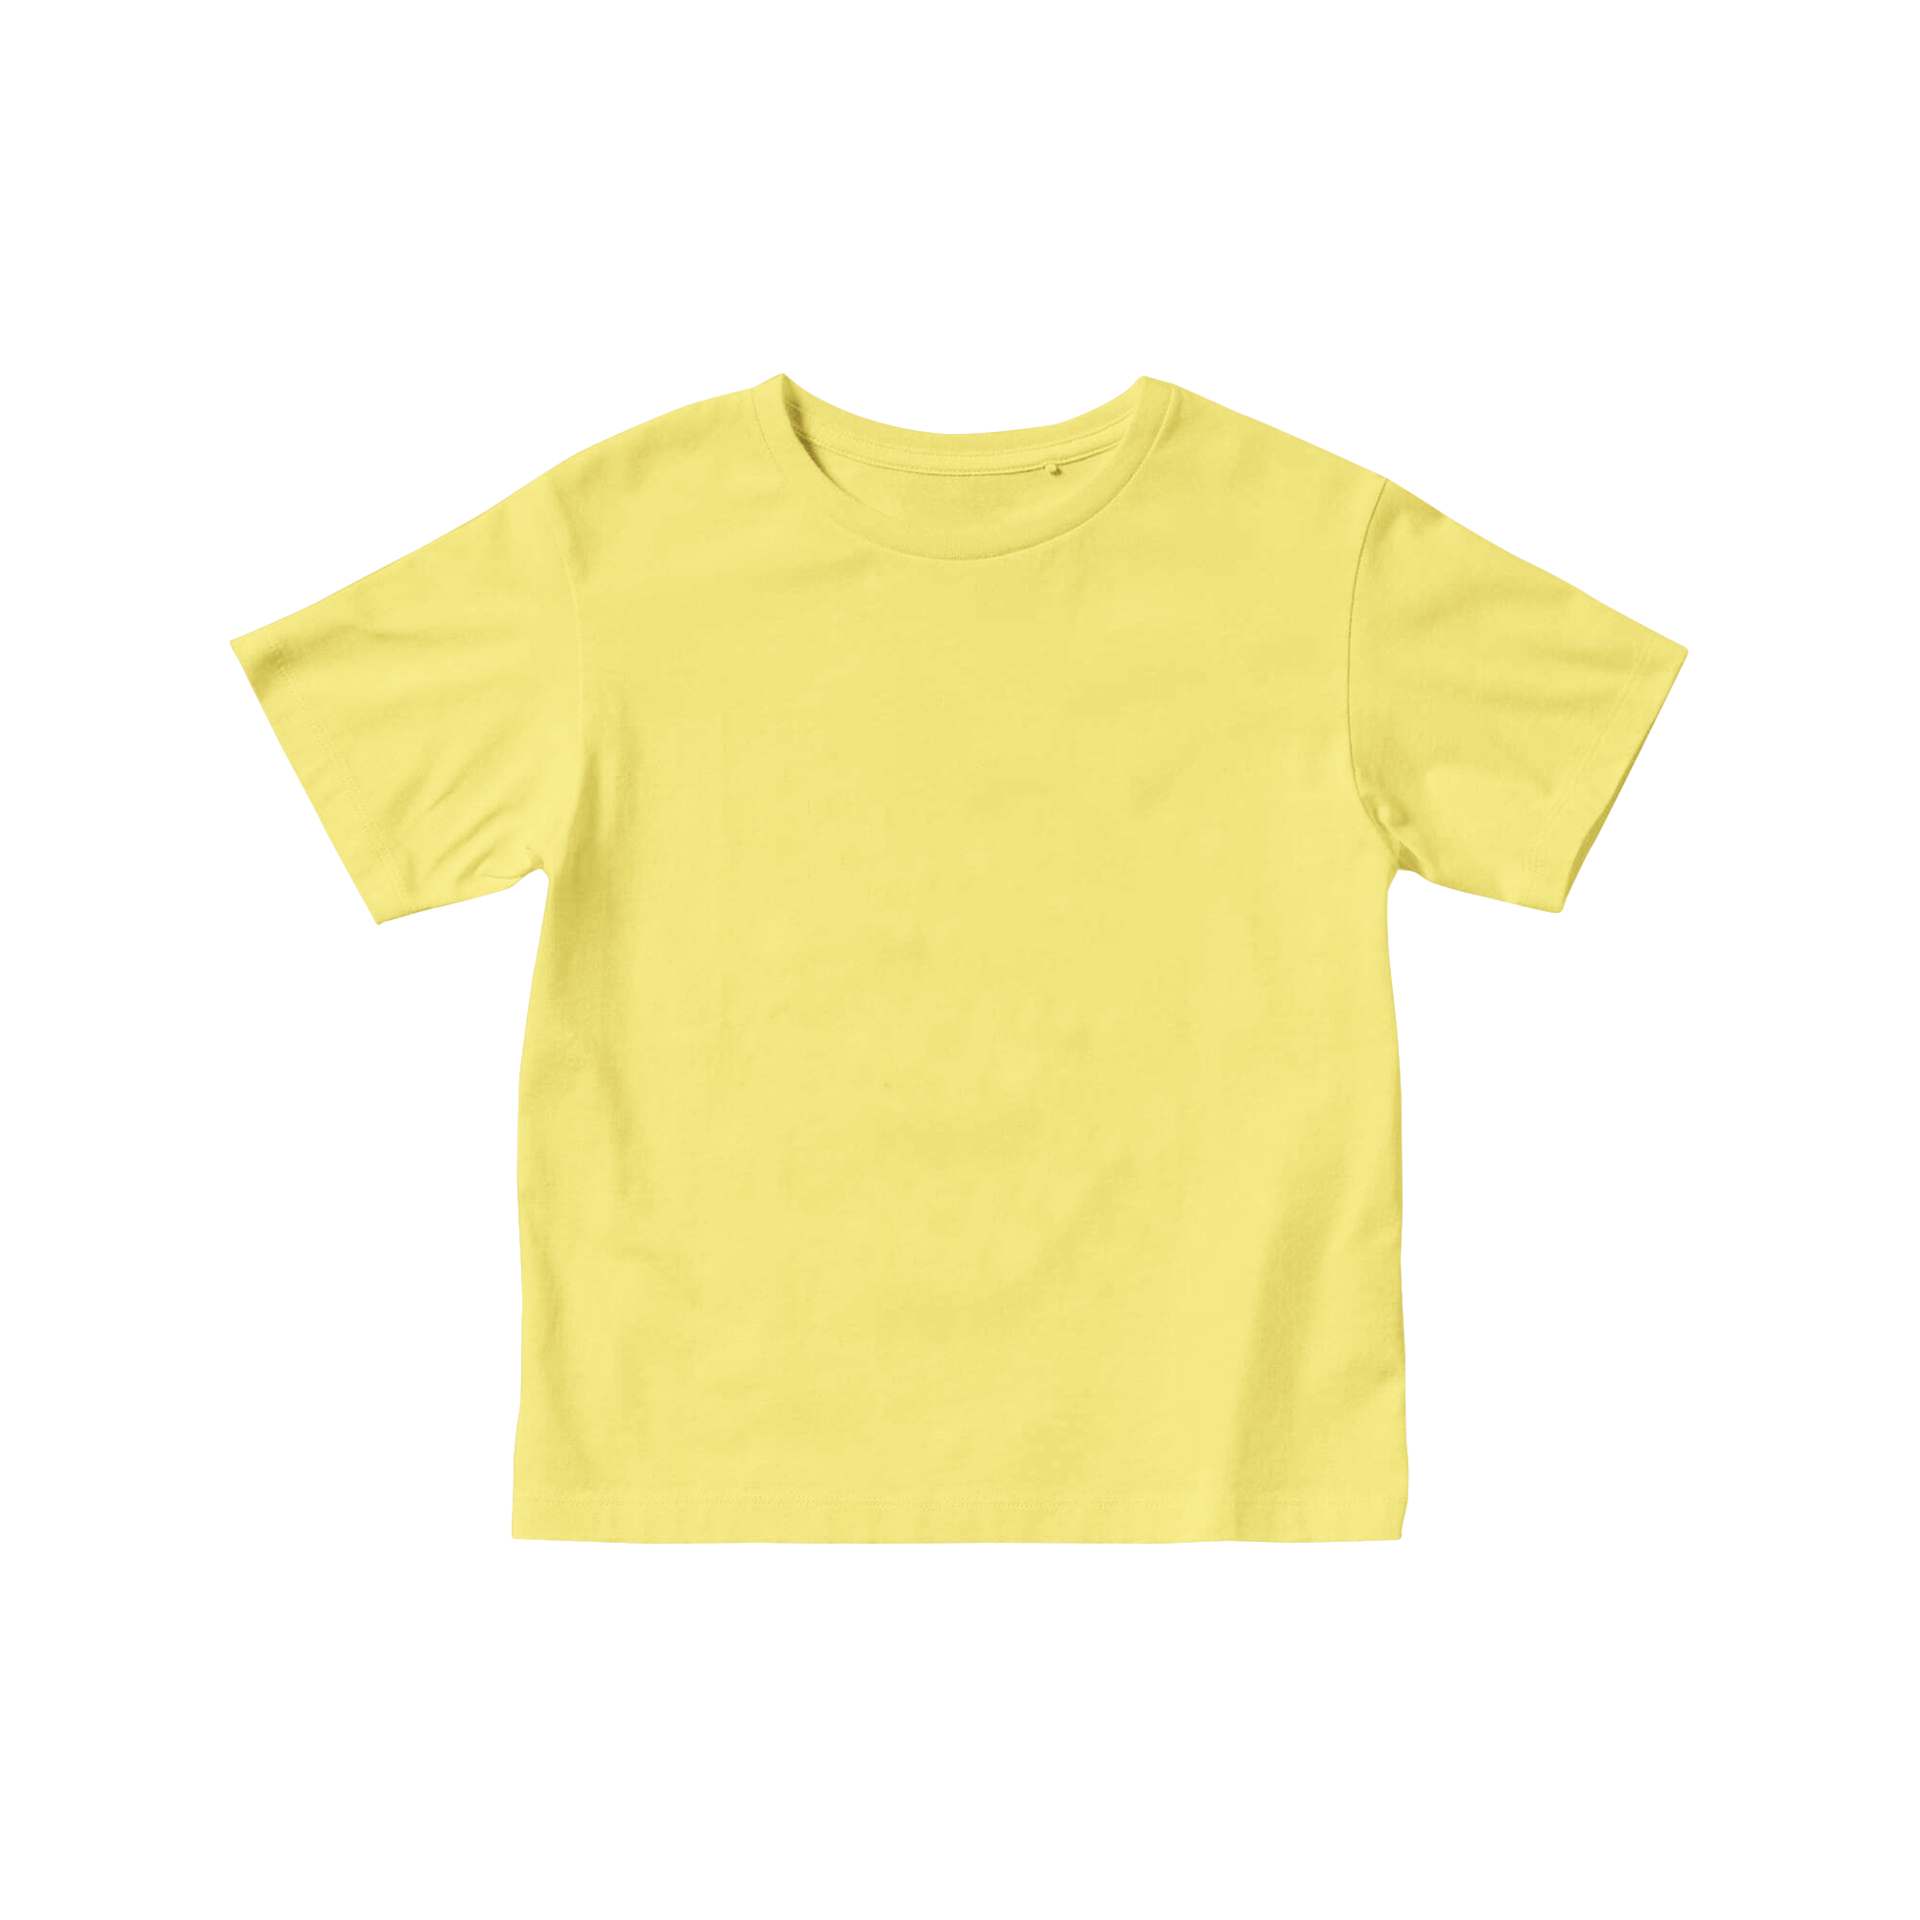 Imágenes de Camiseta Amarilla Nino - Descarga gratuita en Freepik